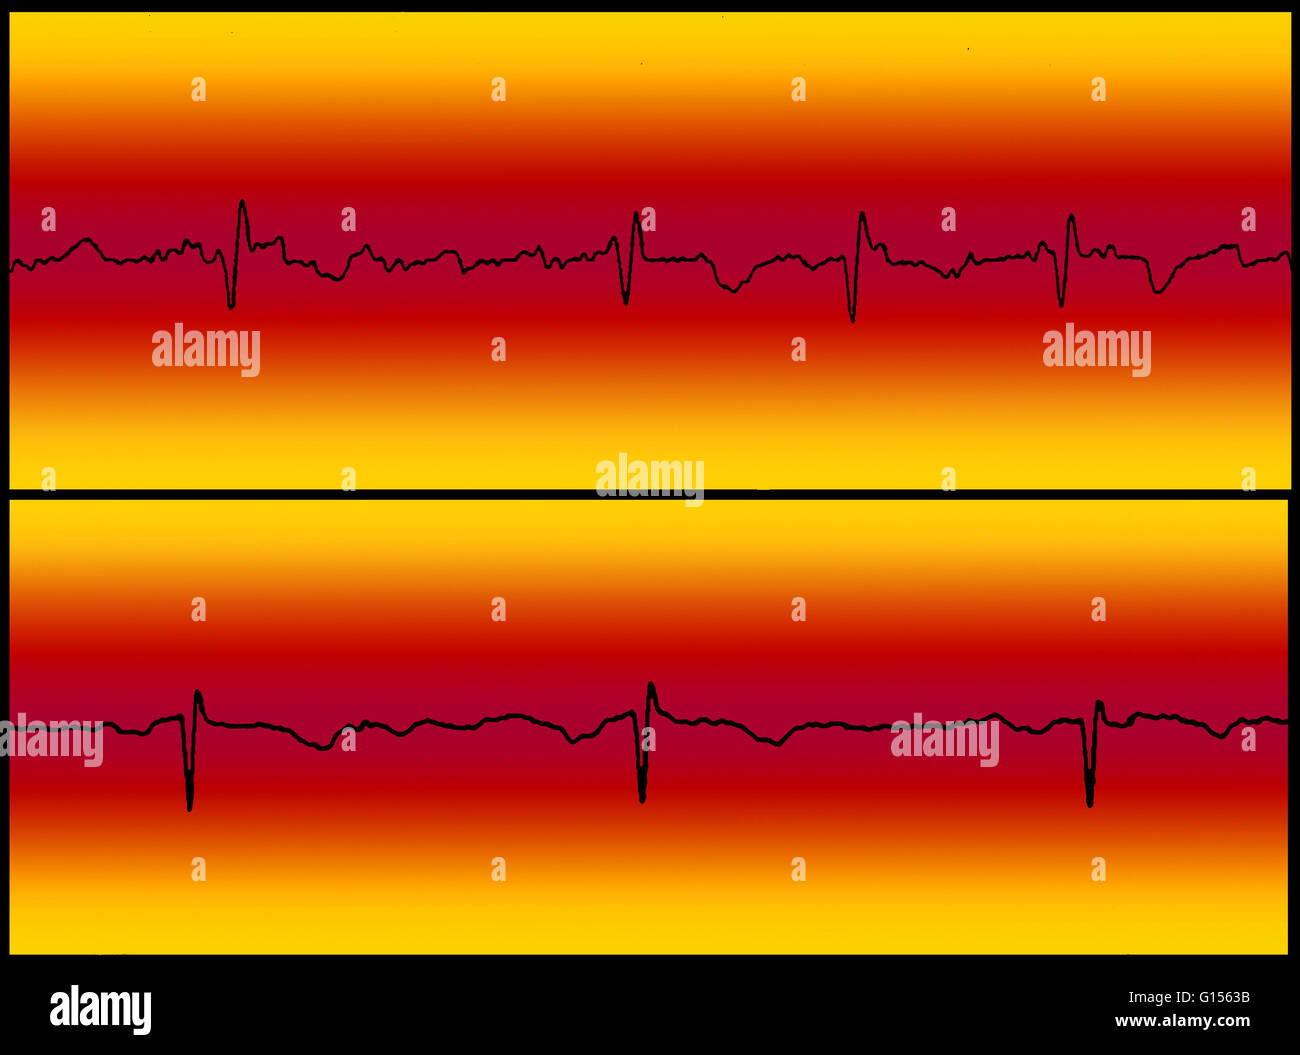 Zusammengesetztes Bild Vergleich ein Elektrokardiogramm (EKG) Auslesen von Vorhofflimmern Flutter (oben) und ein normales Herz schlagen (unten). Stockfoto